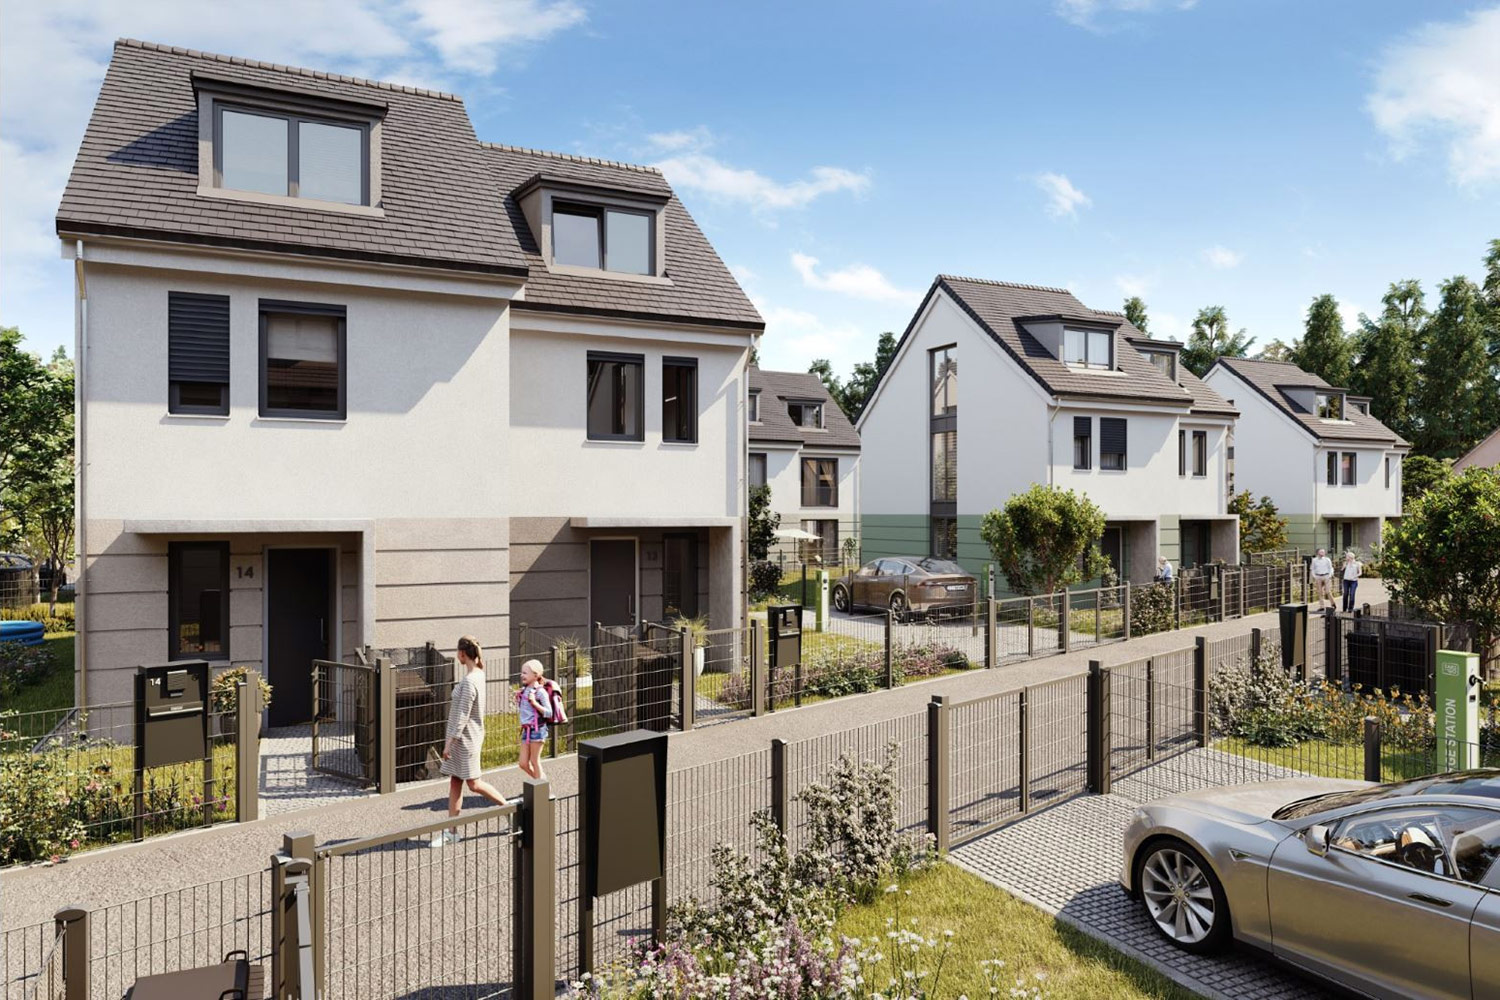 Investmentrekord am Immobilienmarkt des Landkreises Dahme-Spreewald